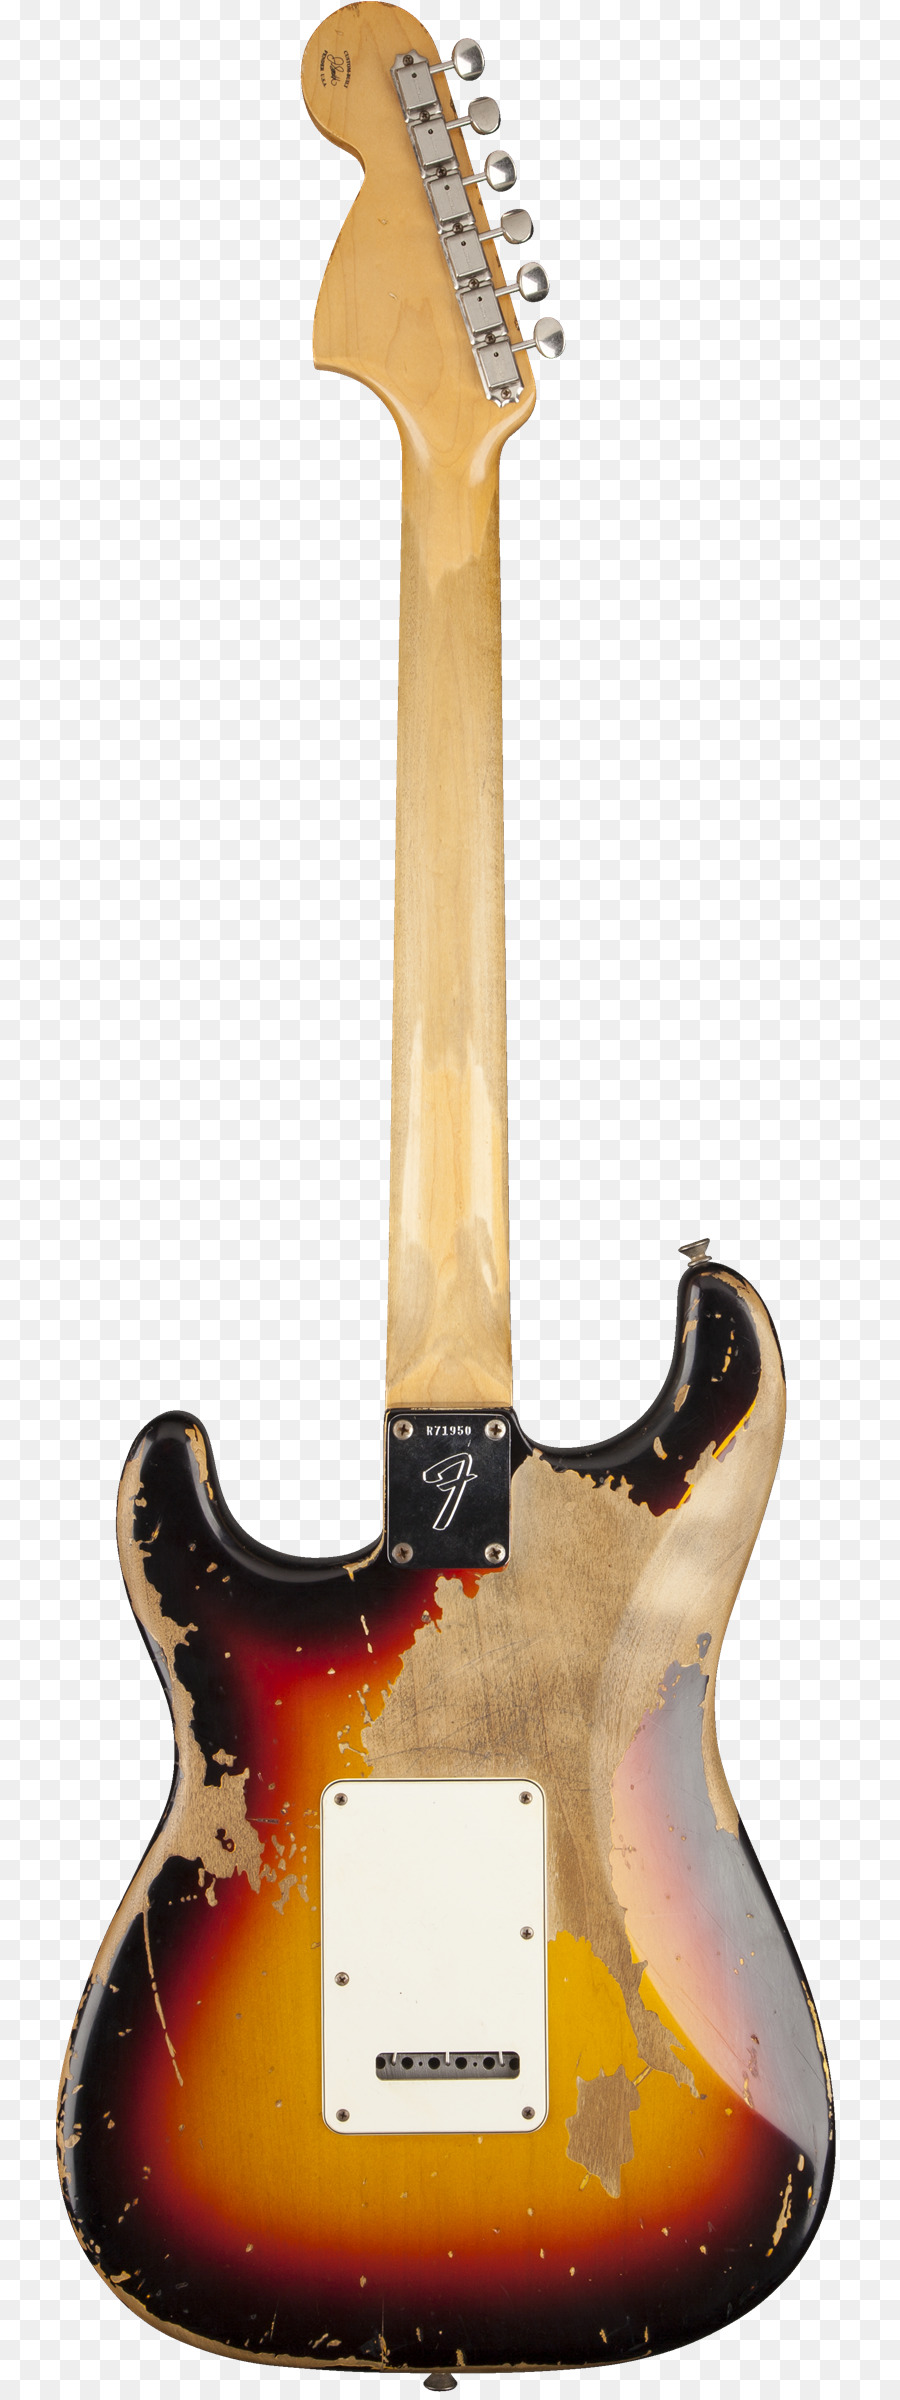 Guitar điện Fender thay thế Fender dụng Cụ âm Nhạc công Ty Sản Fender Chỉnh Cửa - cây guitar